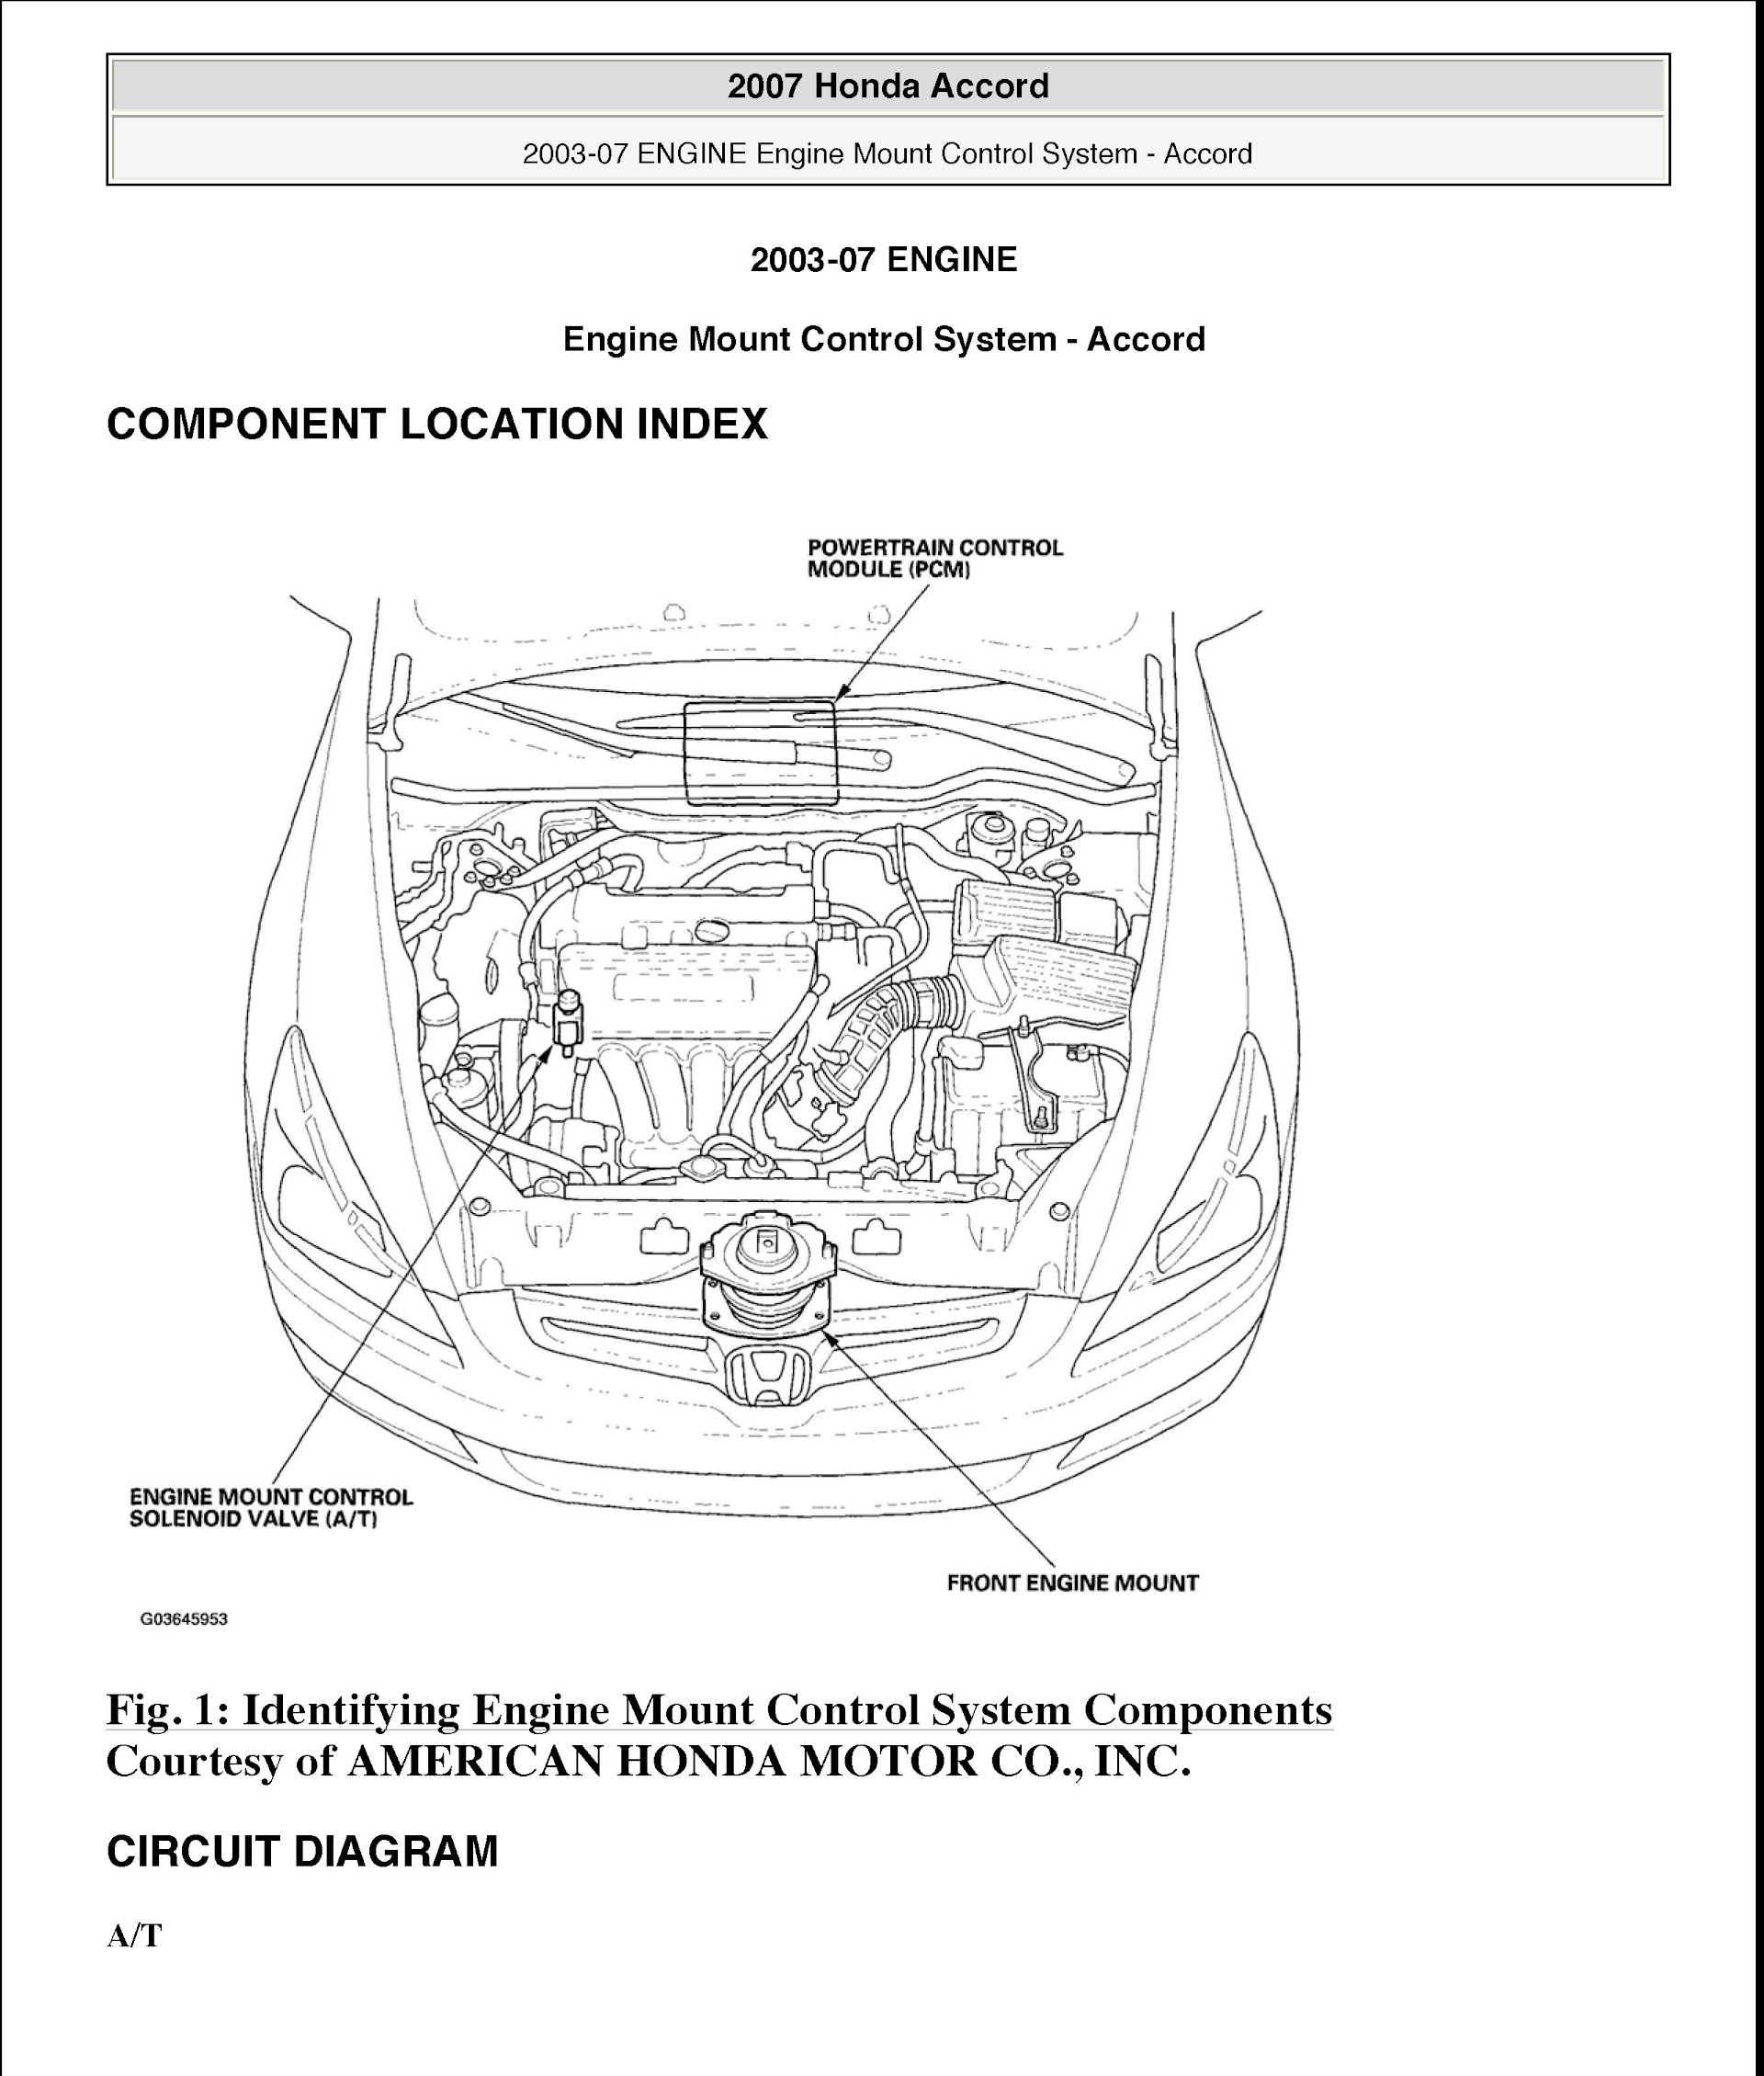 2007 Honda Accord Repair Manual, Engine Mount Control System